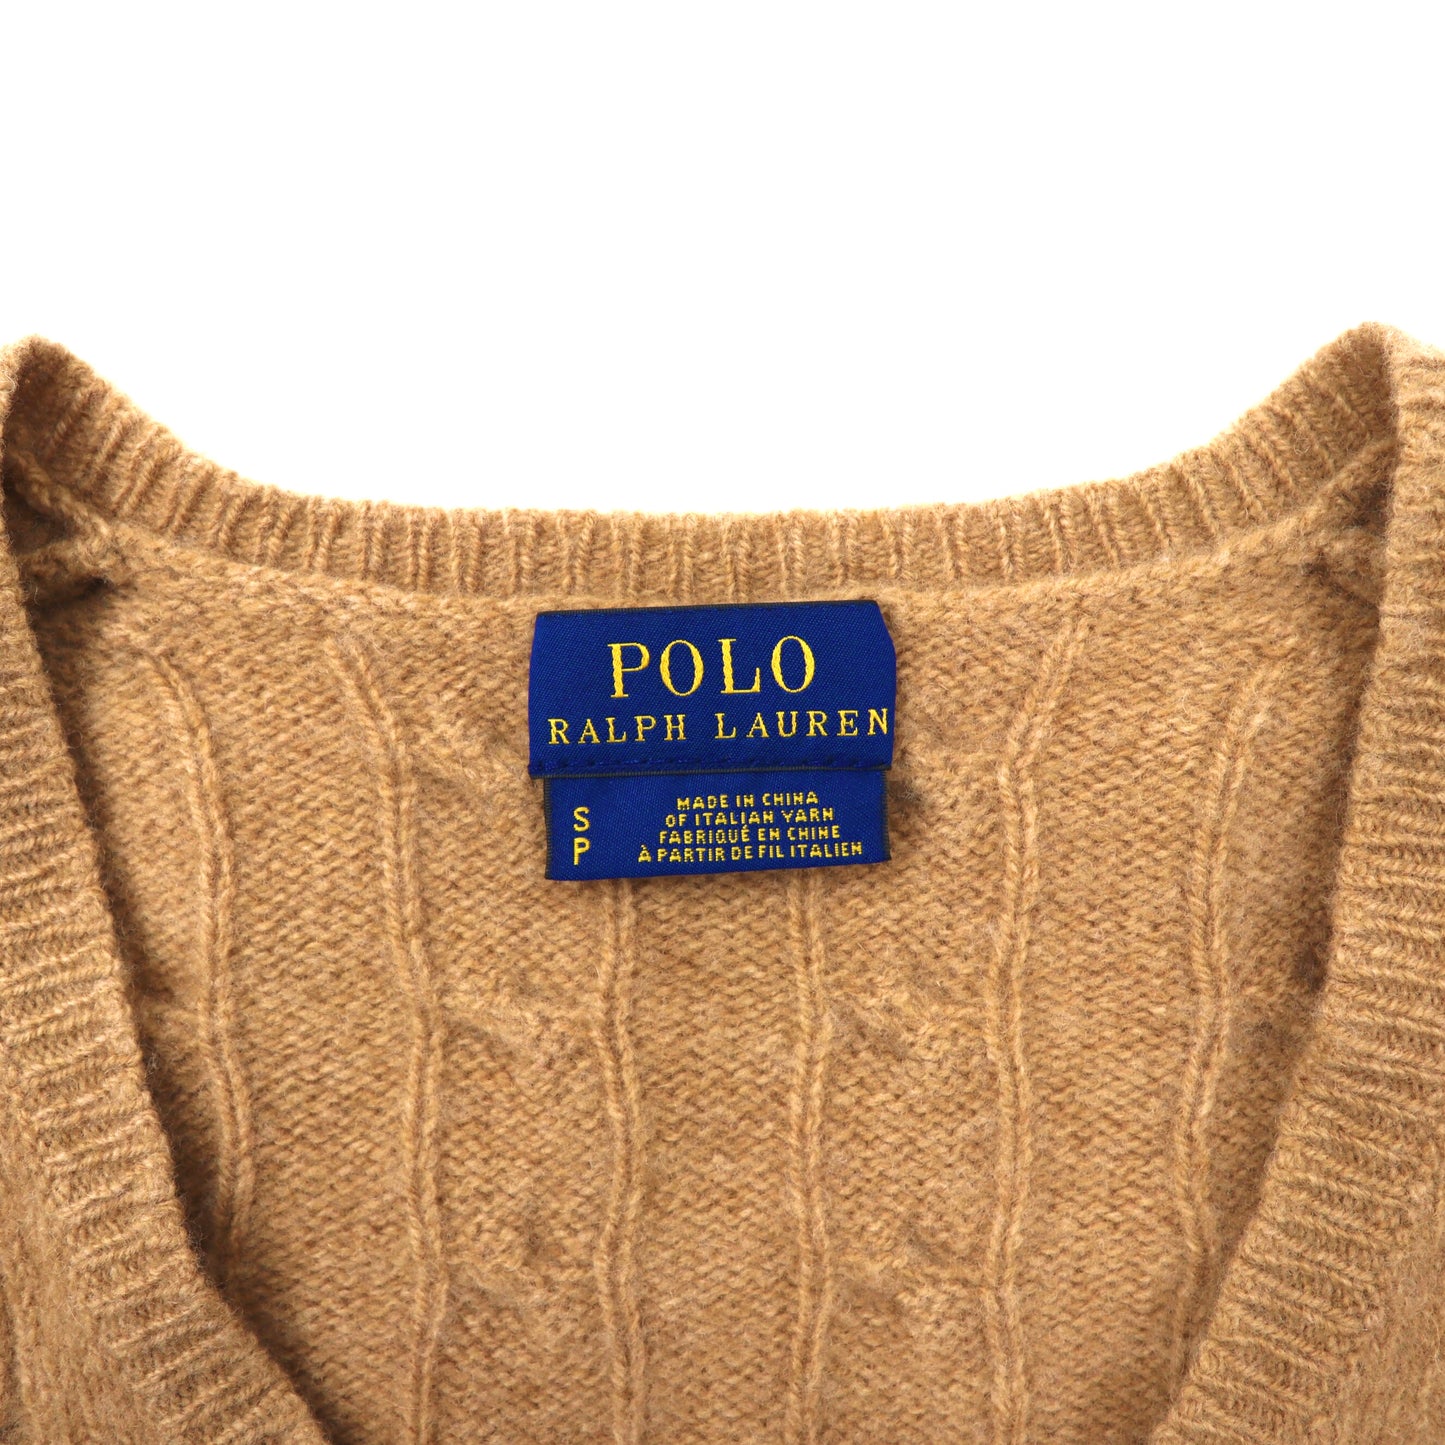 POLO RALPH LAUREN Vネックニットセーター S ブラウン ウール ケーブル編み スモールポニー刺繍